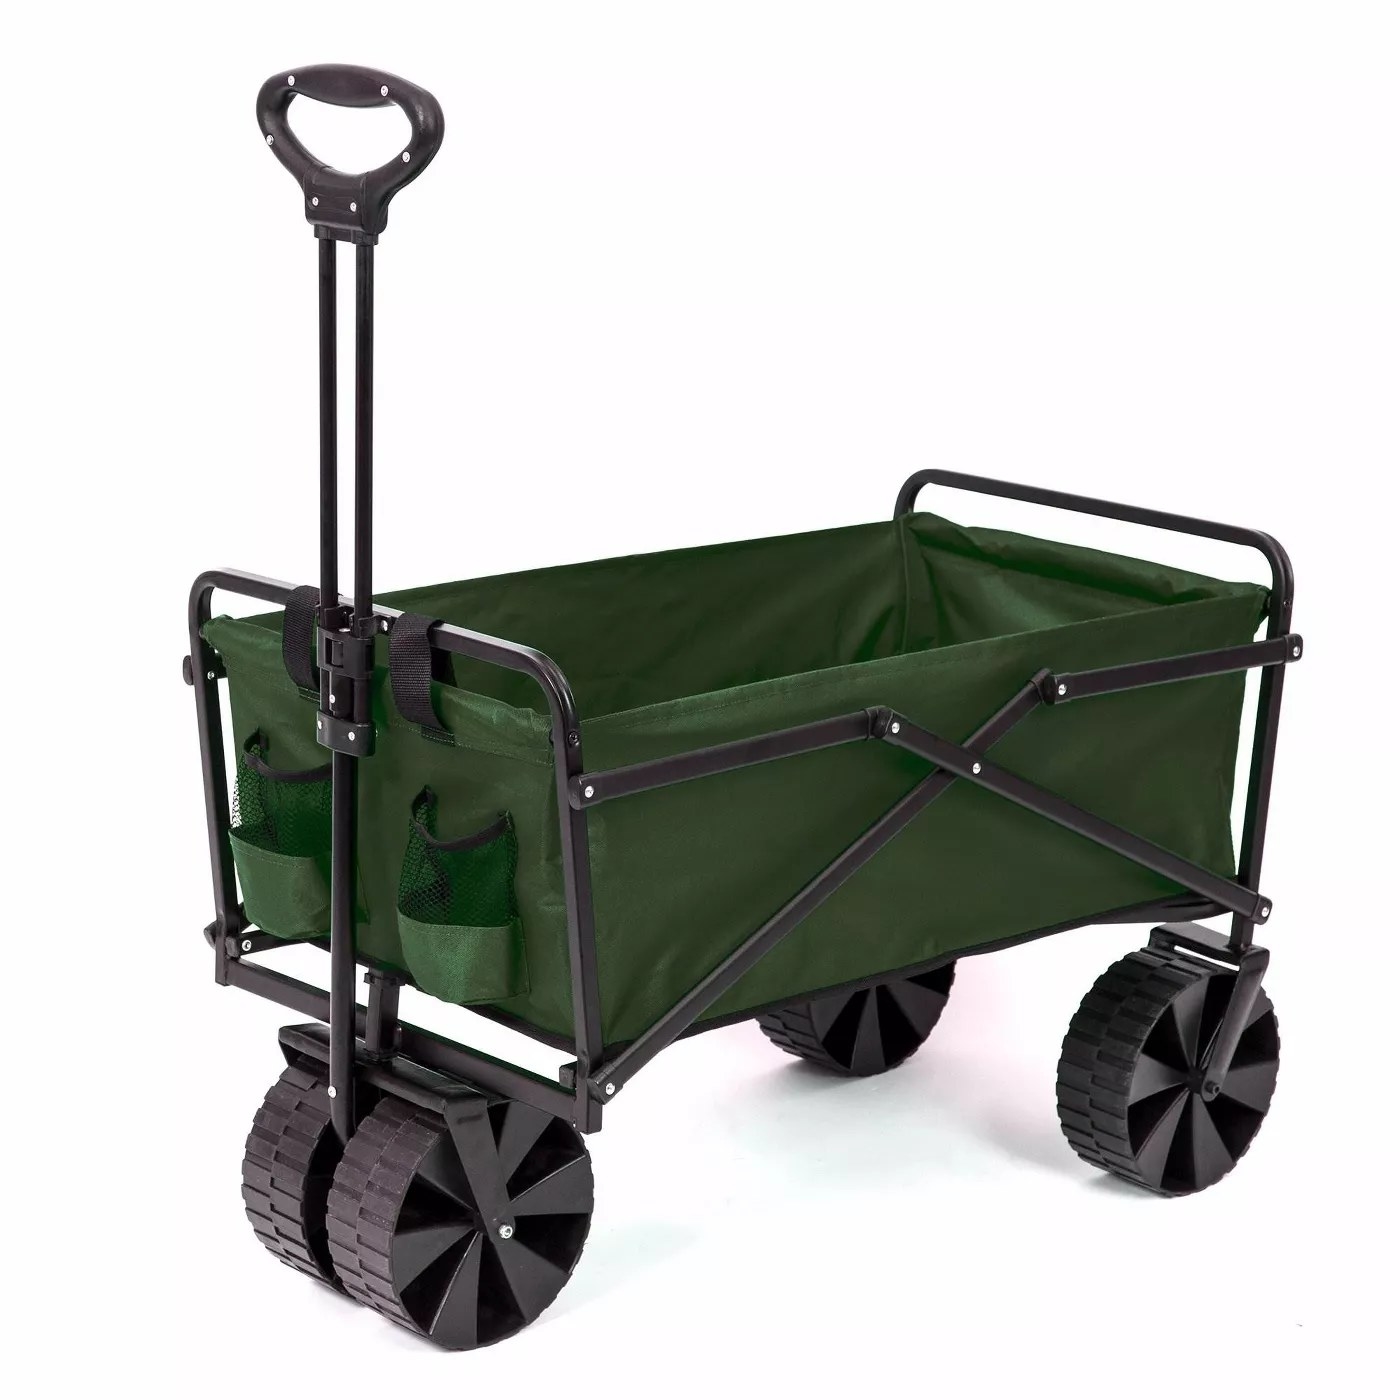 A green garden cart